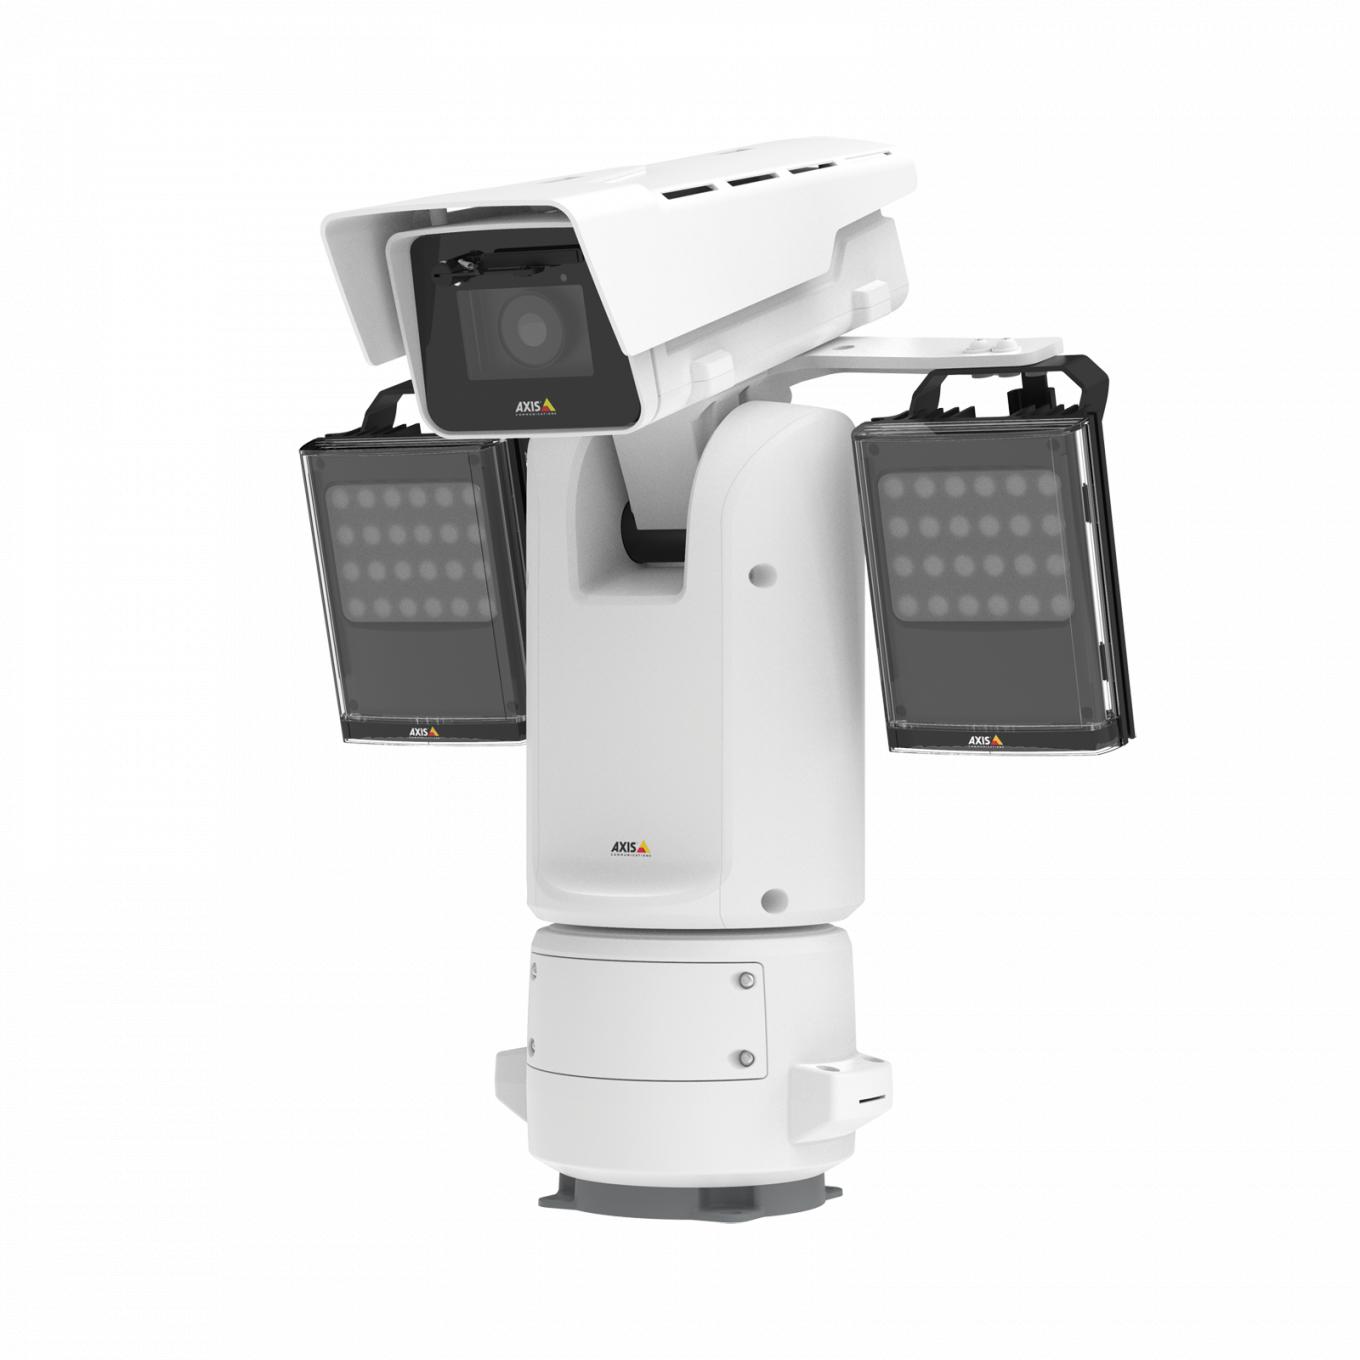 Kamera AXIS Q8685-E PTZ IP Camera zamontowana z kamerą AXIS Q8685-E PTZ Network Camera